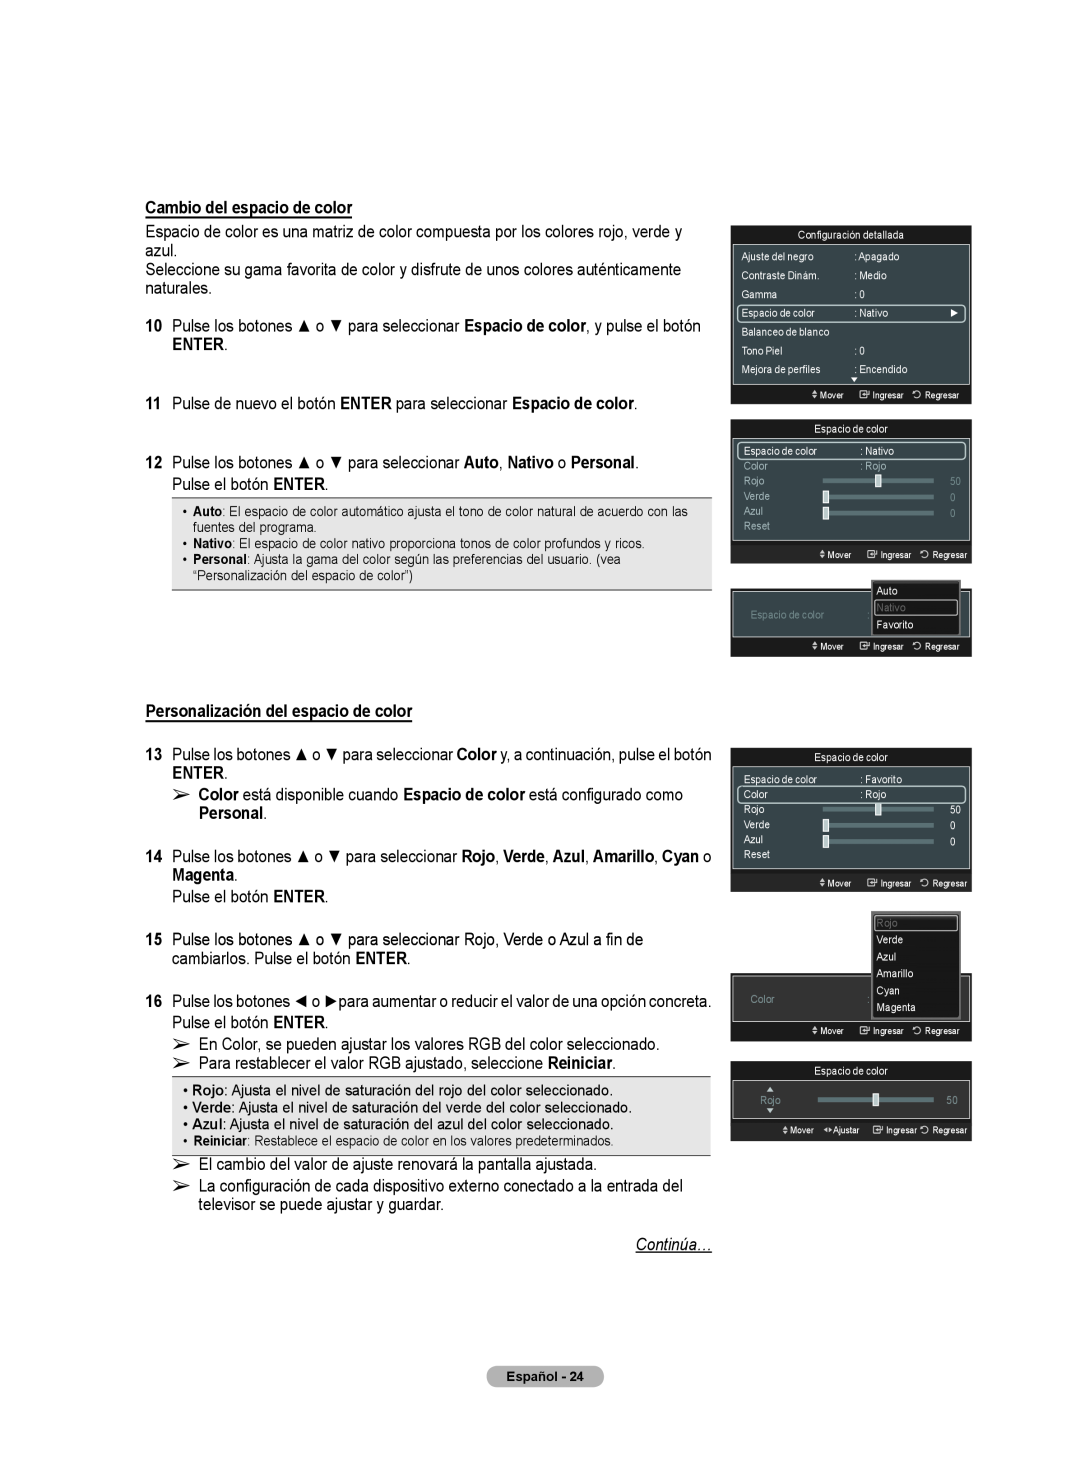 Samsung 510 user manual Cambio del espacio de color, Enter, Personalización del espacio de color, Magenta, Continúa… 